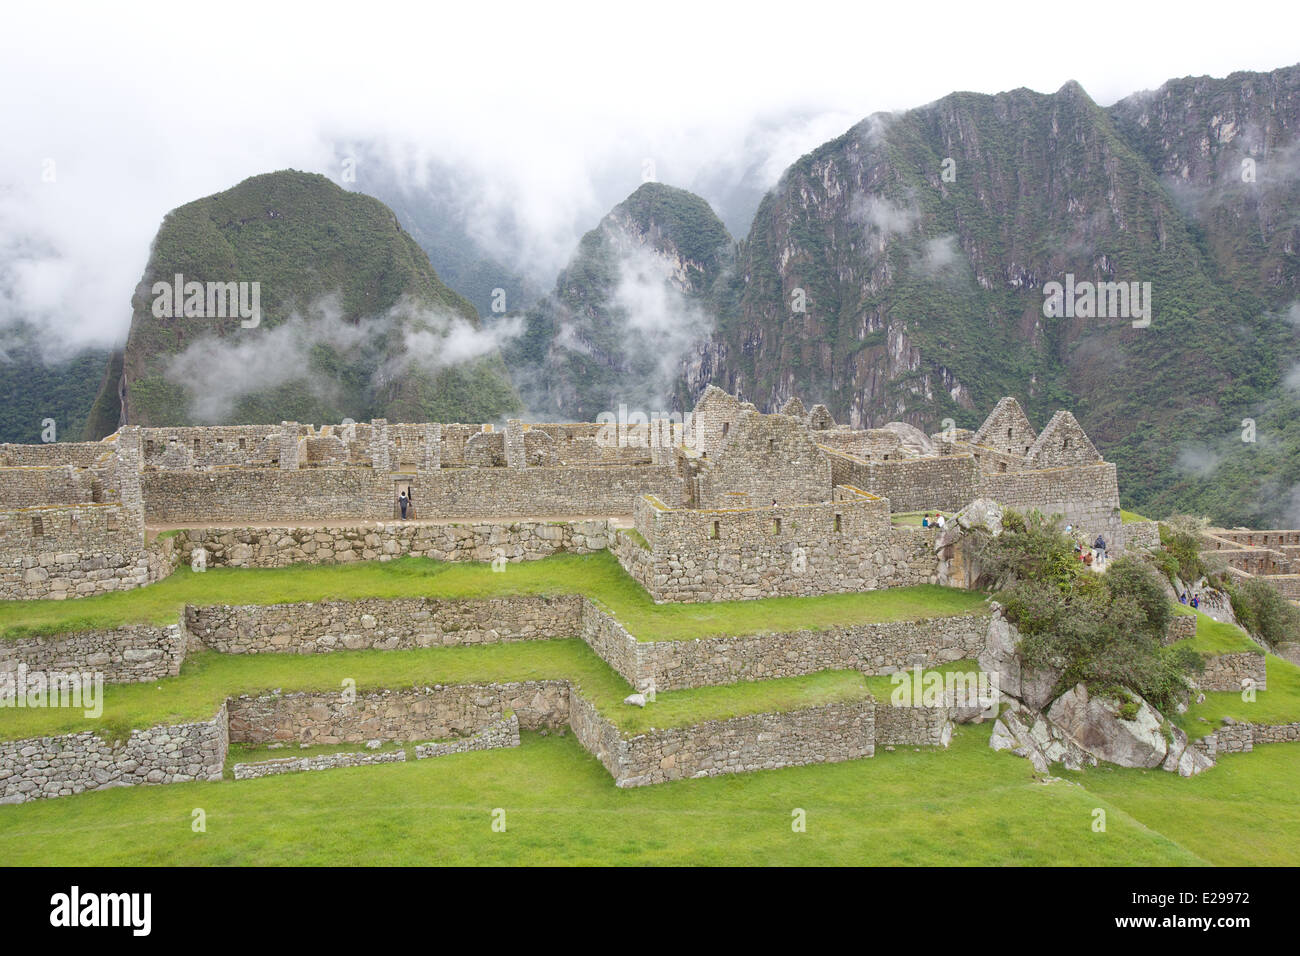 Bellissima e misteriosa Machu Picchu la Città perduta degli Incas, nelle Ande peruviane, a sunrise. Foto Stock